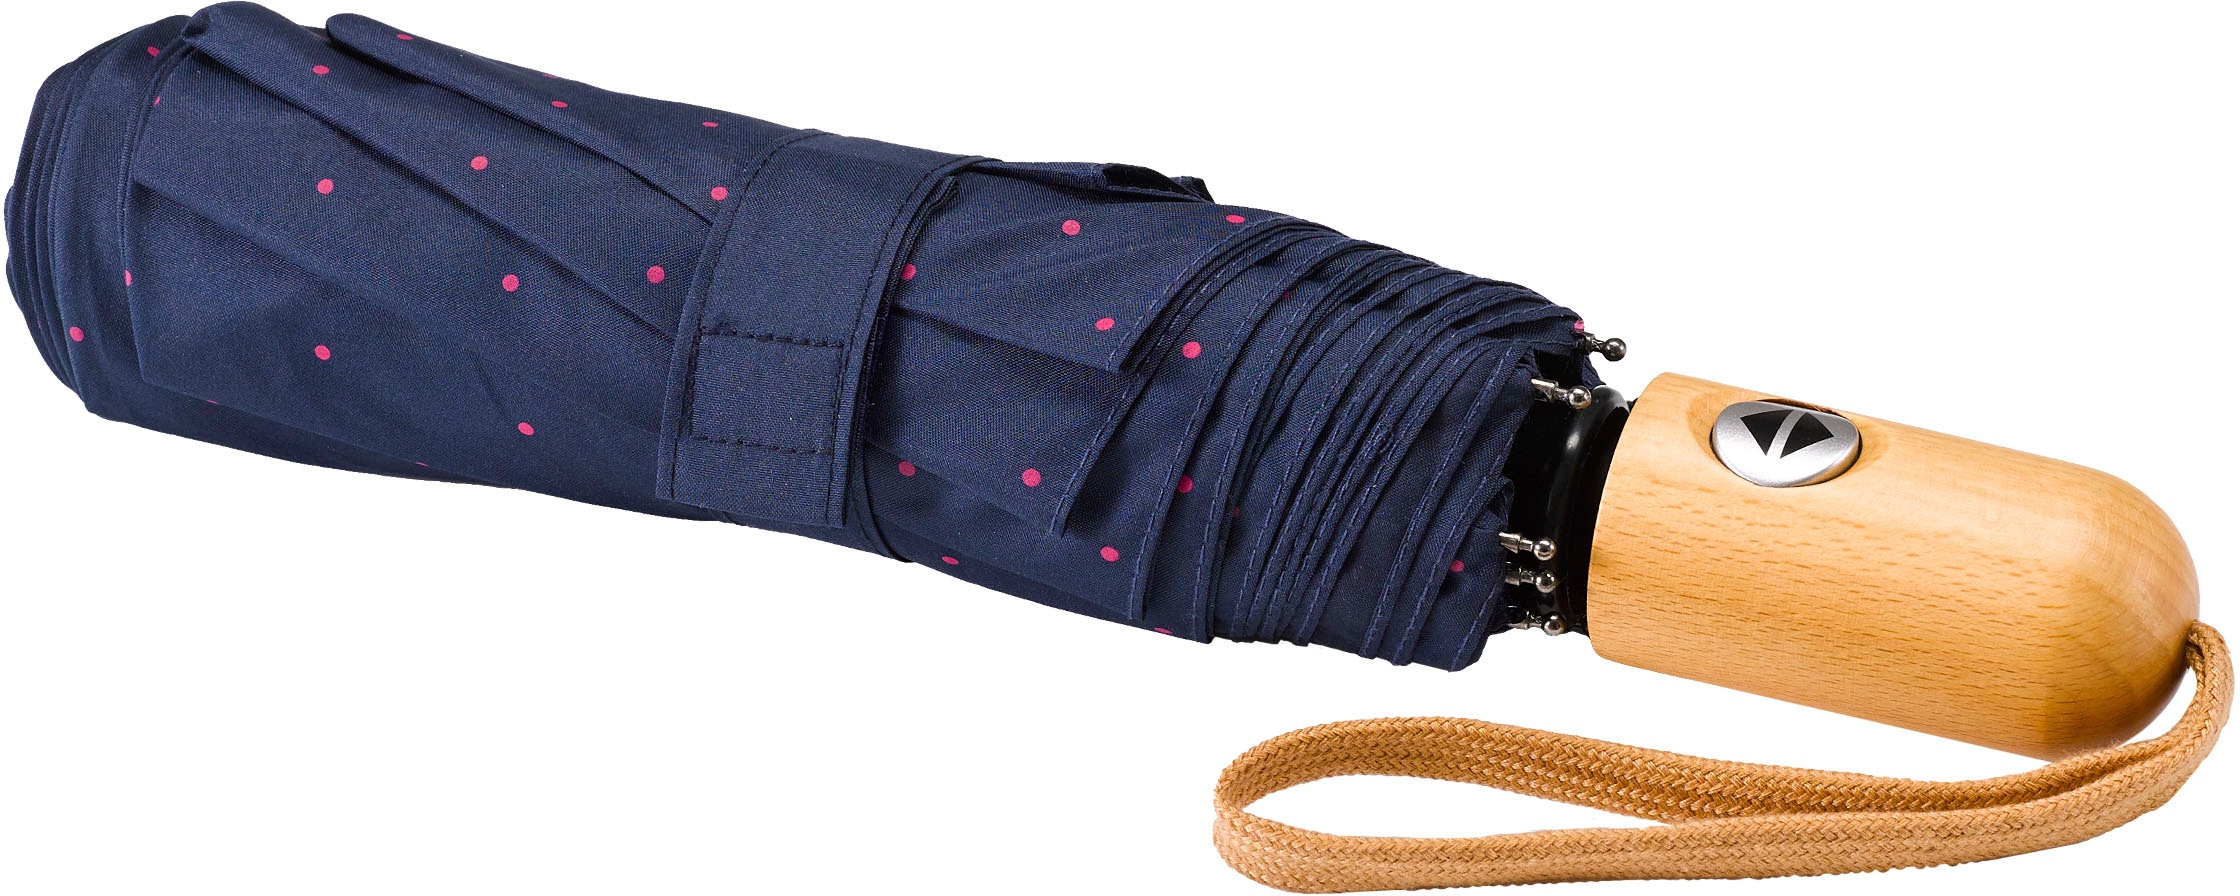 kaufen marine, Punkte »Umwelt-Taschenschirm, EuroSCHIRM® pink« Taschenregenschirm